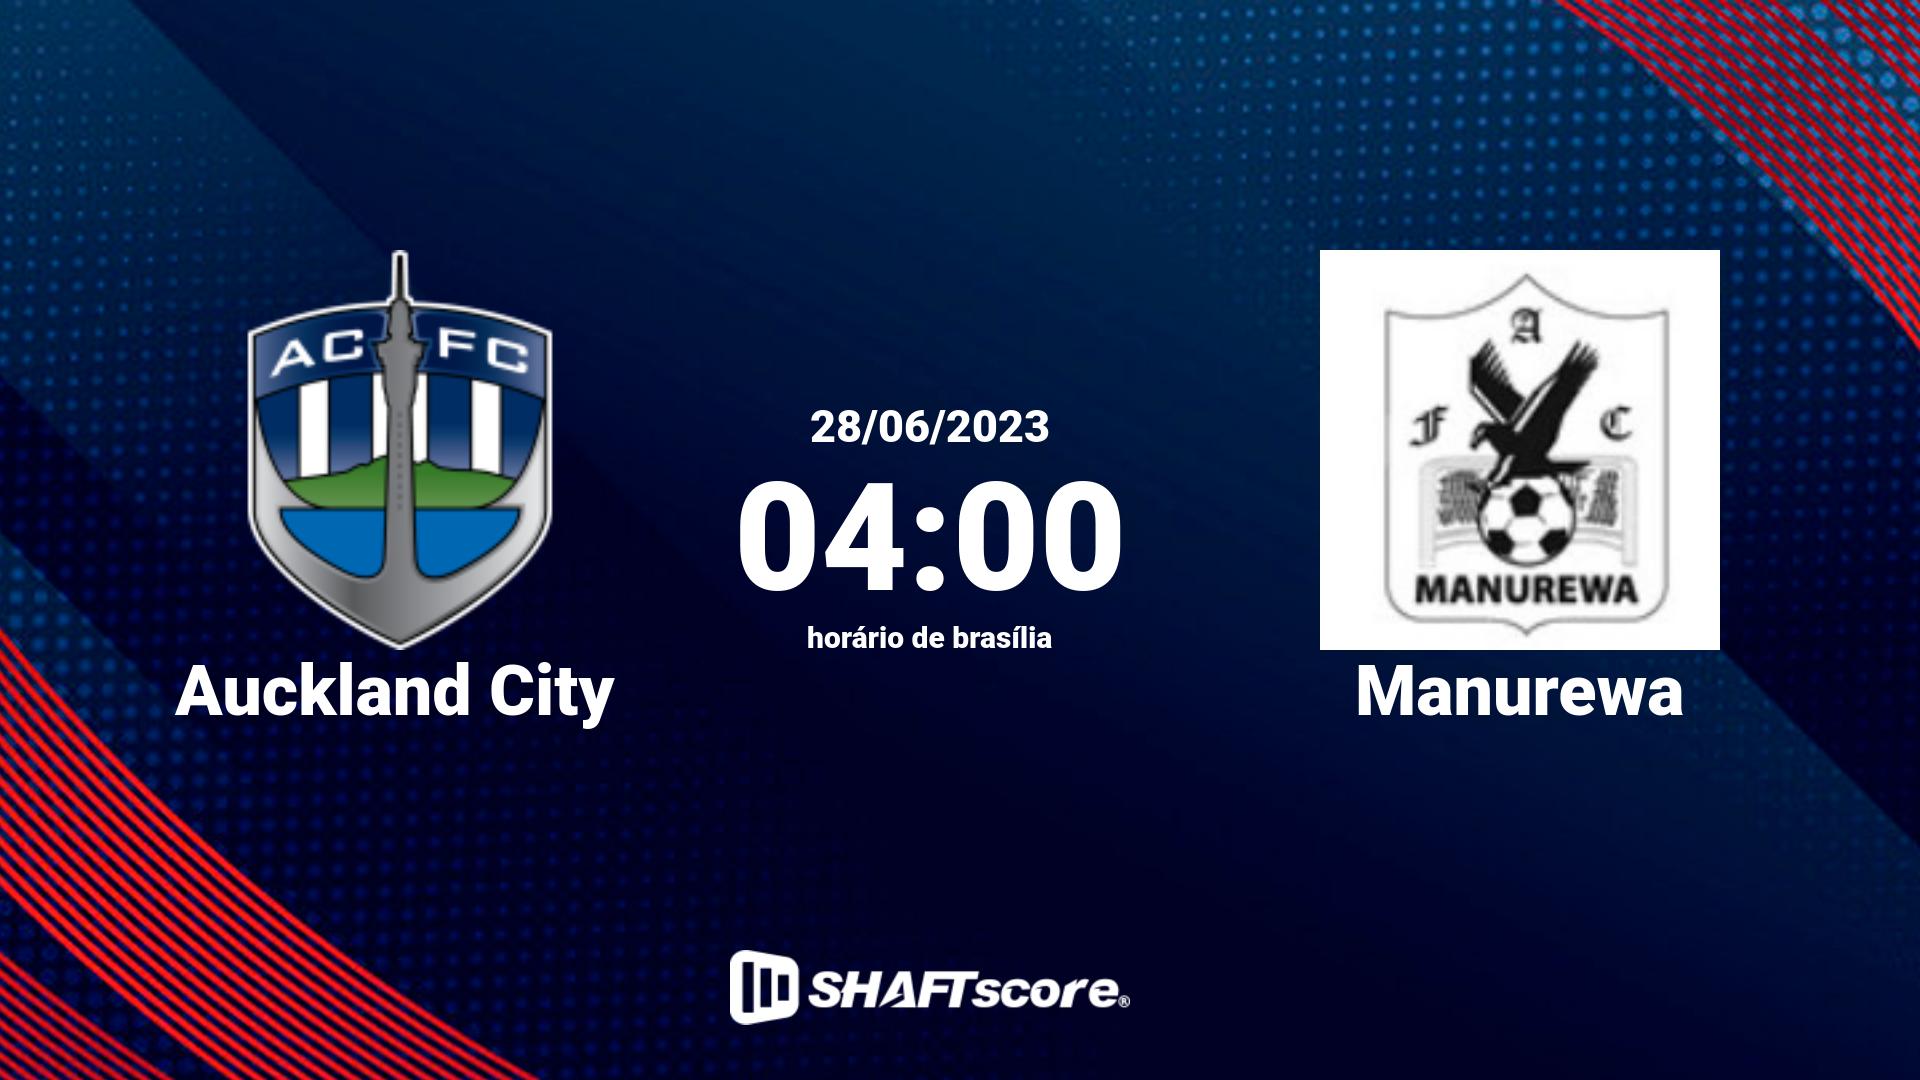 Estatísticas do jogo Auckland City vs Manurewa 28.06 04:00